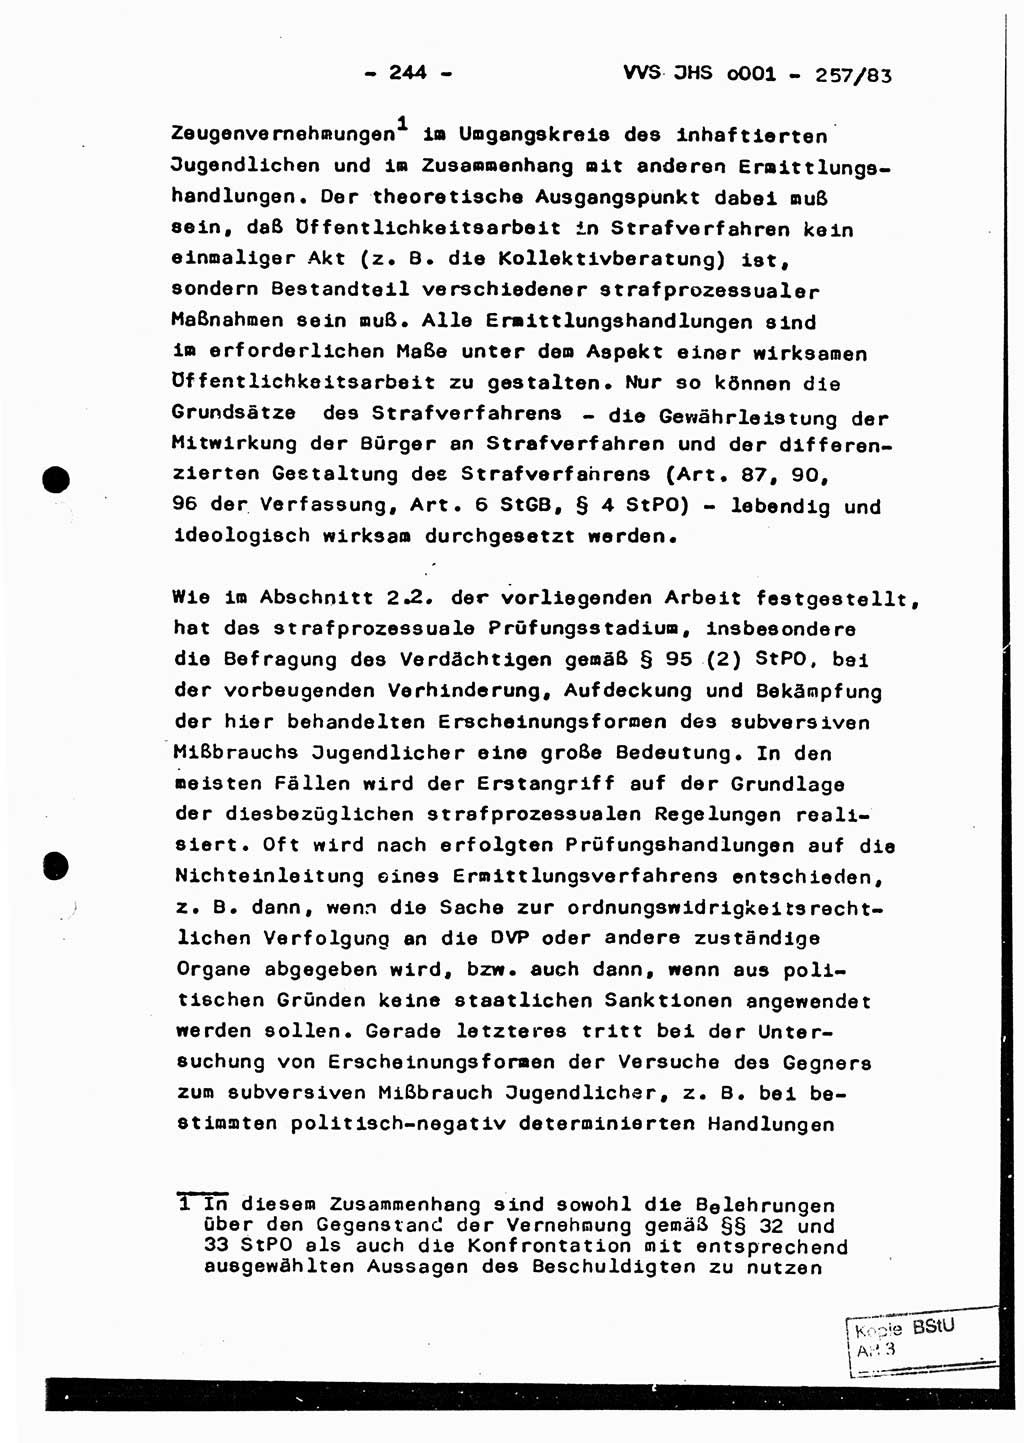 Dissertation, Oberst Helmut Lubas (BV Mdg.), Oberstleutnant Manfred Eschberger (HA IX), Oberleutnant Hans-Jürgen Ludwig (JHS), Ministerium für Staatssicherheit (MfS) [Deutsche Demokratische Republik (DDR)], Juristische Hochschule (JHS), Vertrauliche Verschlußsache (VVS) o001-257/83, Potsdam 1983, Seite 244 (Diss. MfS DDR JHS VVS o001-257/83 1983, S. 244)